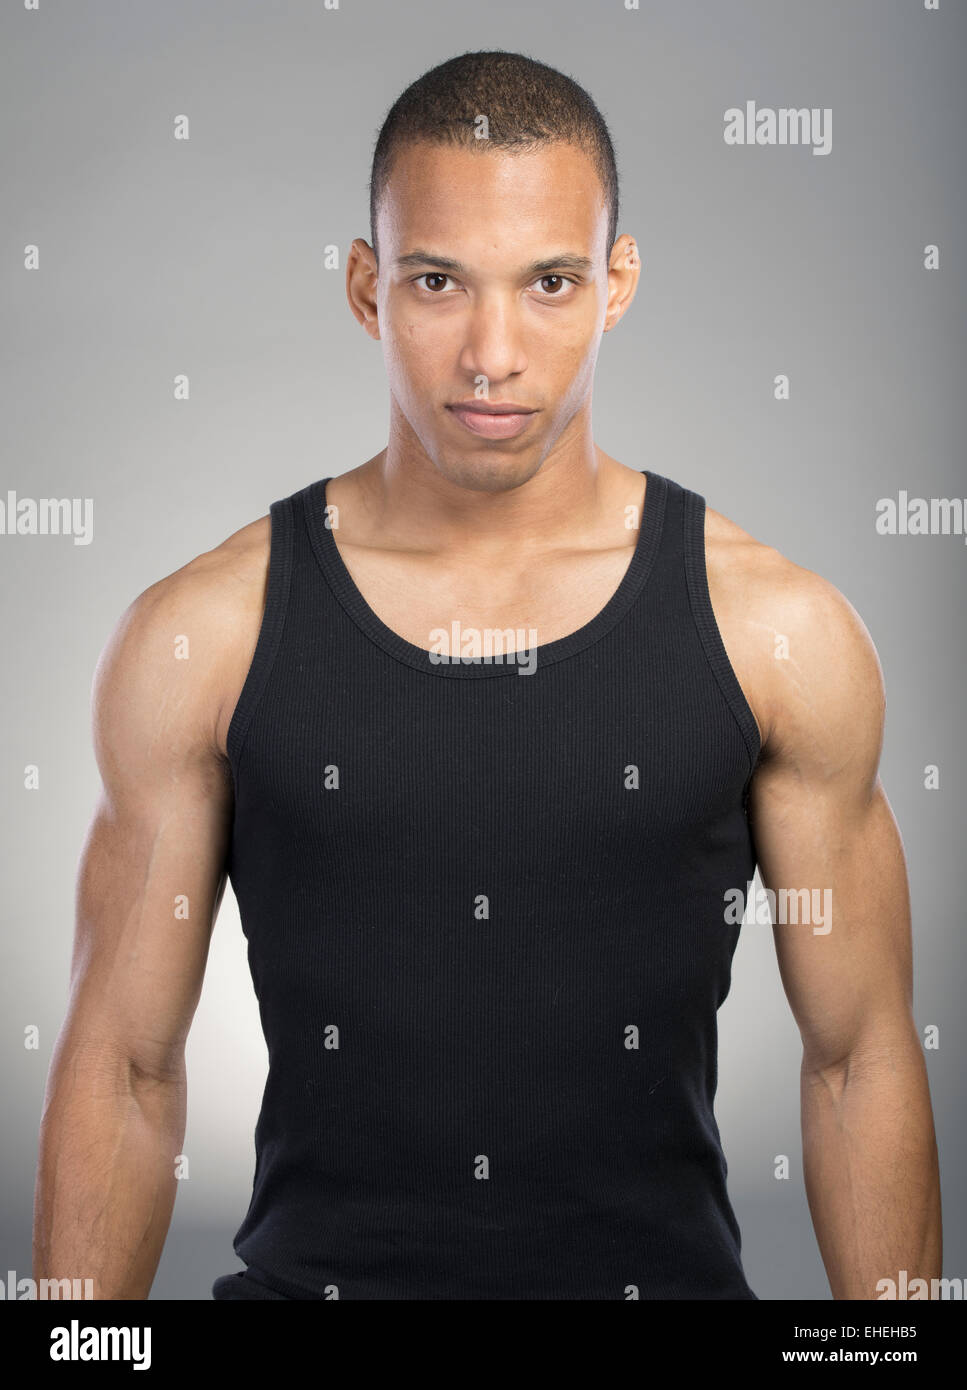 Muskulöser Mann mit schwarzen Tank-Top-Weste Stockfoto